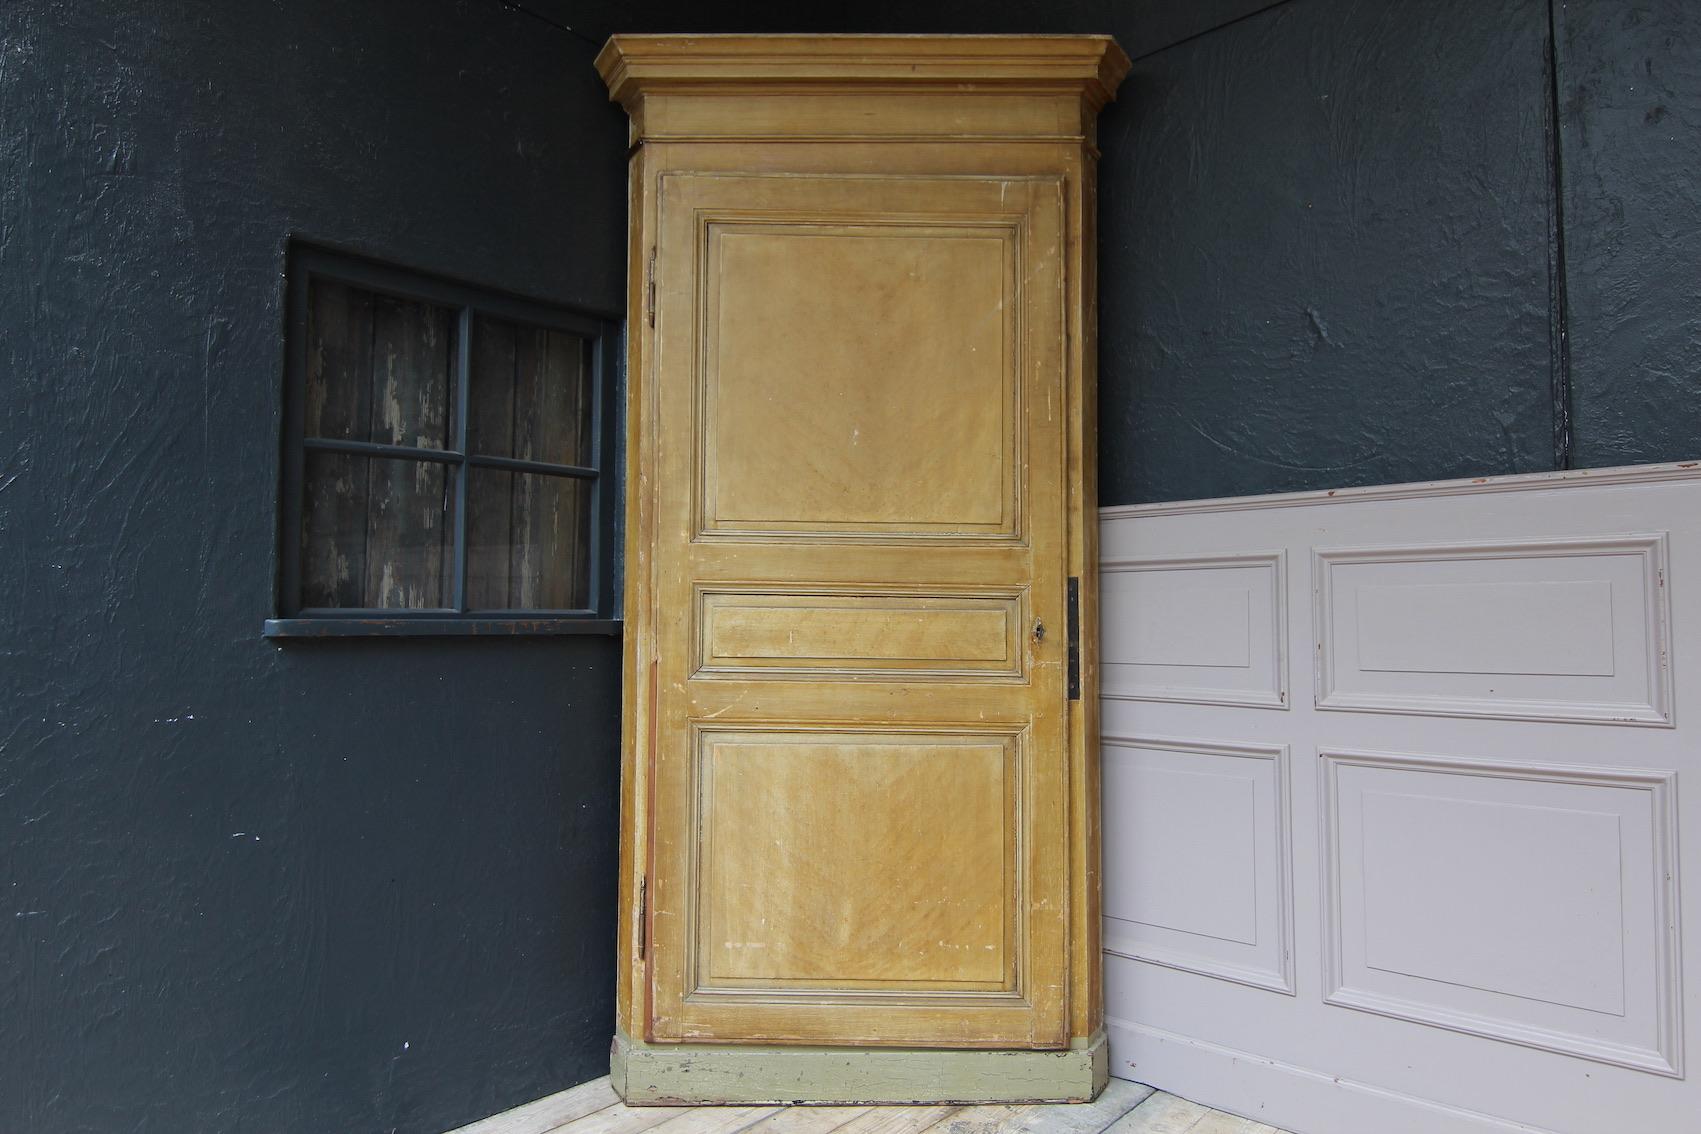 Dieses schöne Möbelstück aus dem 19. Jahrhundert aus Frankreich war und ist ein Eckschrank, der einst in der Zimmerecke eingeputzt war. Jetzt hat sie eine neue Rückwand und man kann sie sogar verschieben.
Die Originalfarbe des Schranks hat eine